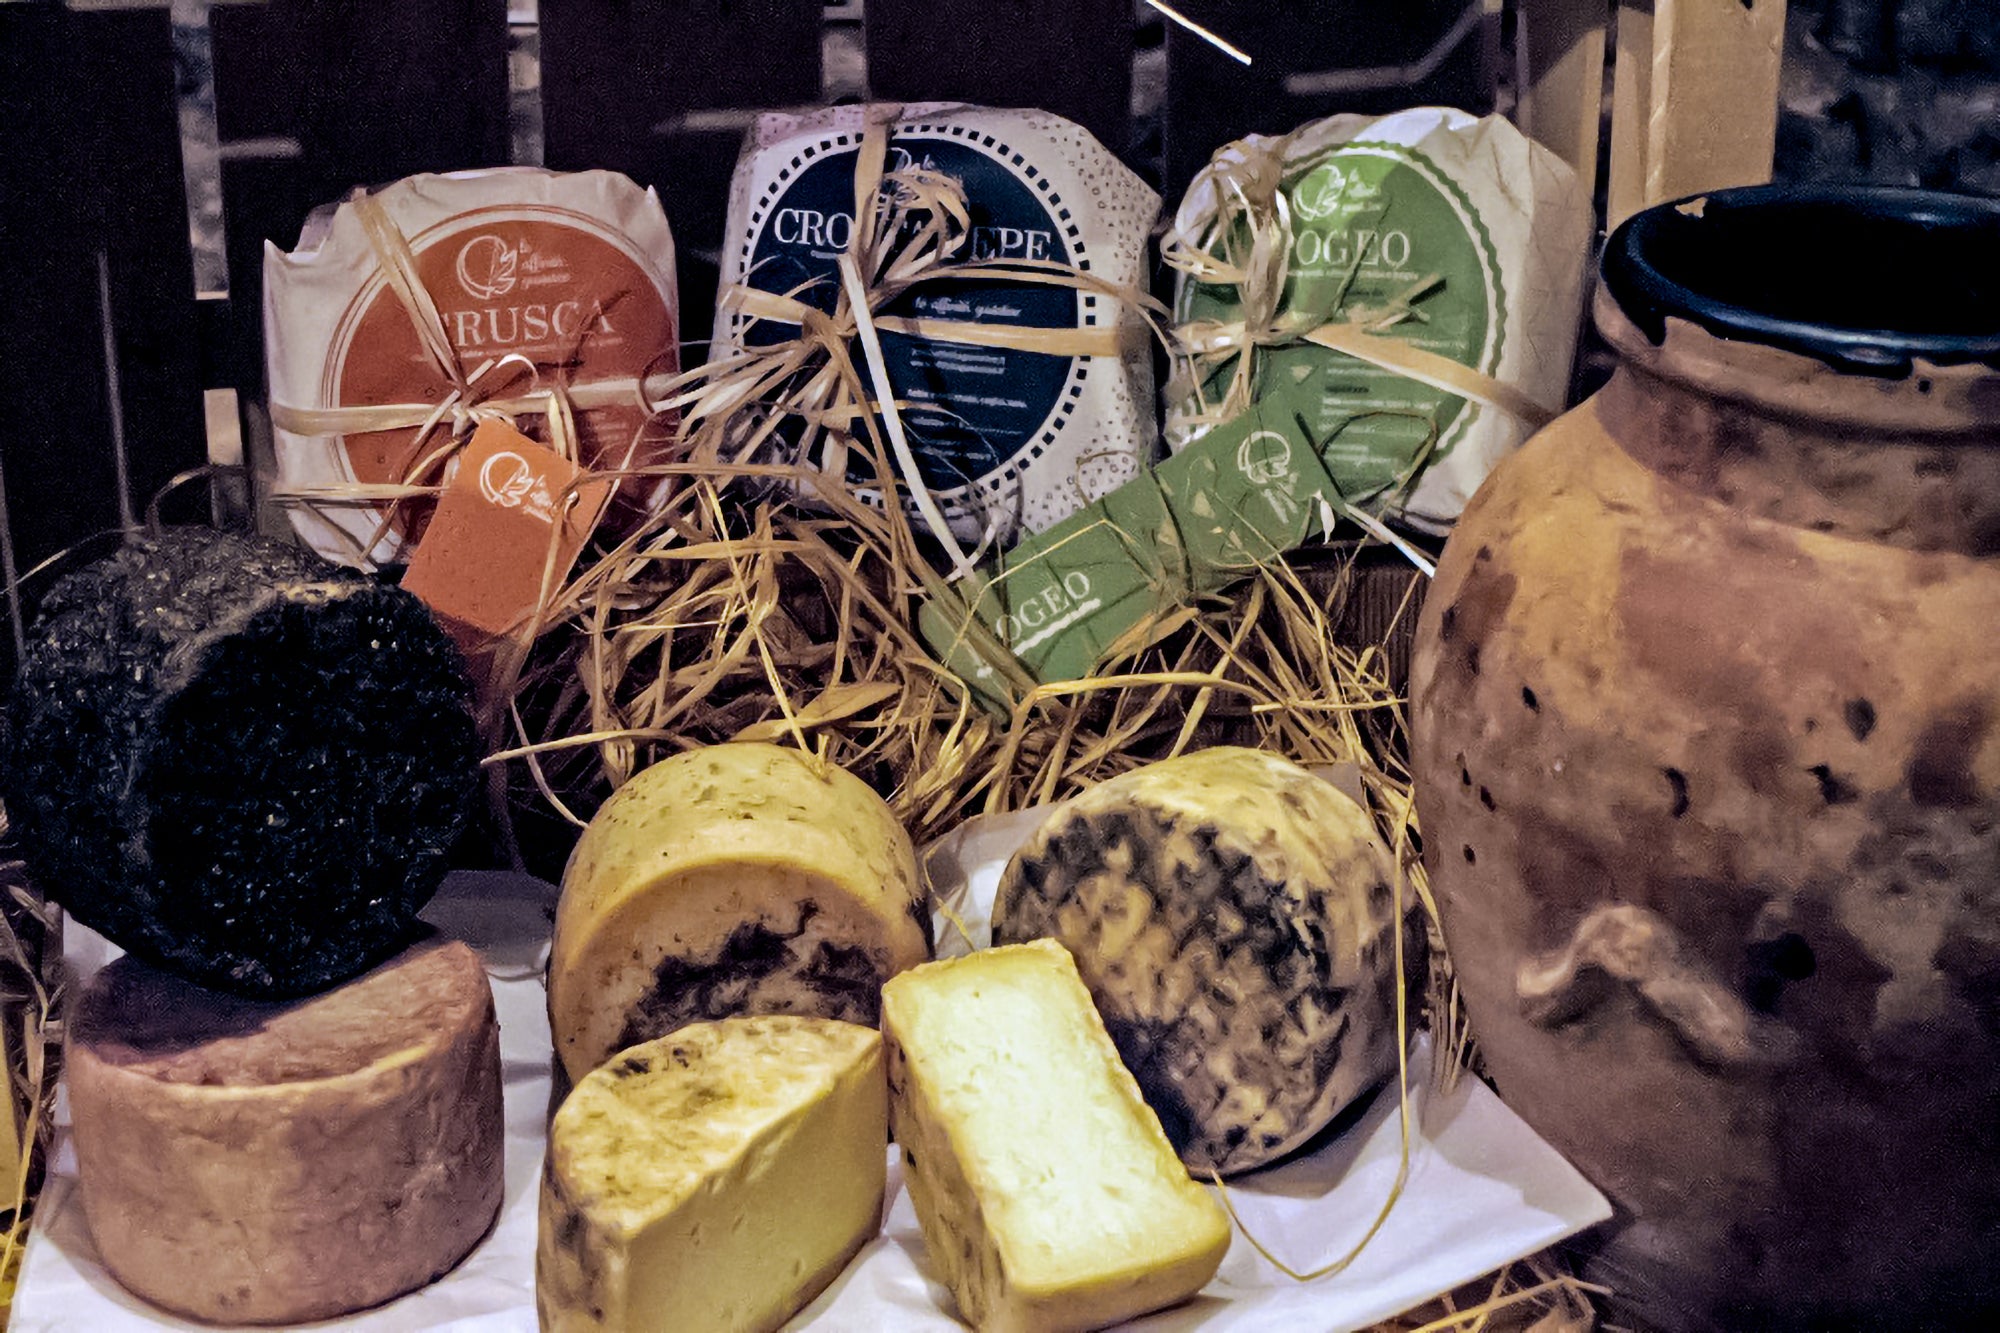 Degustazione di formaggi per una persona, con assaggio di vini presso «Le affinità gustative» - Mondavio (PU) Tasting of cheeses for one person, with wine tasting at «Le affinità gustative» - Mondavio (PU)